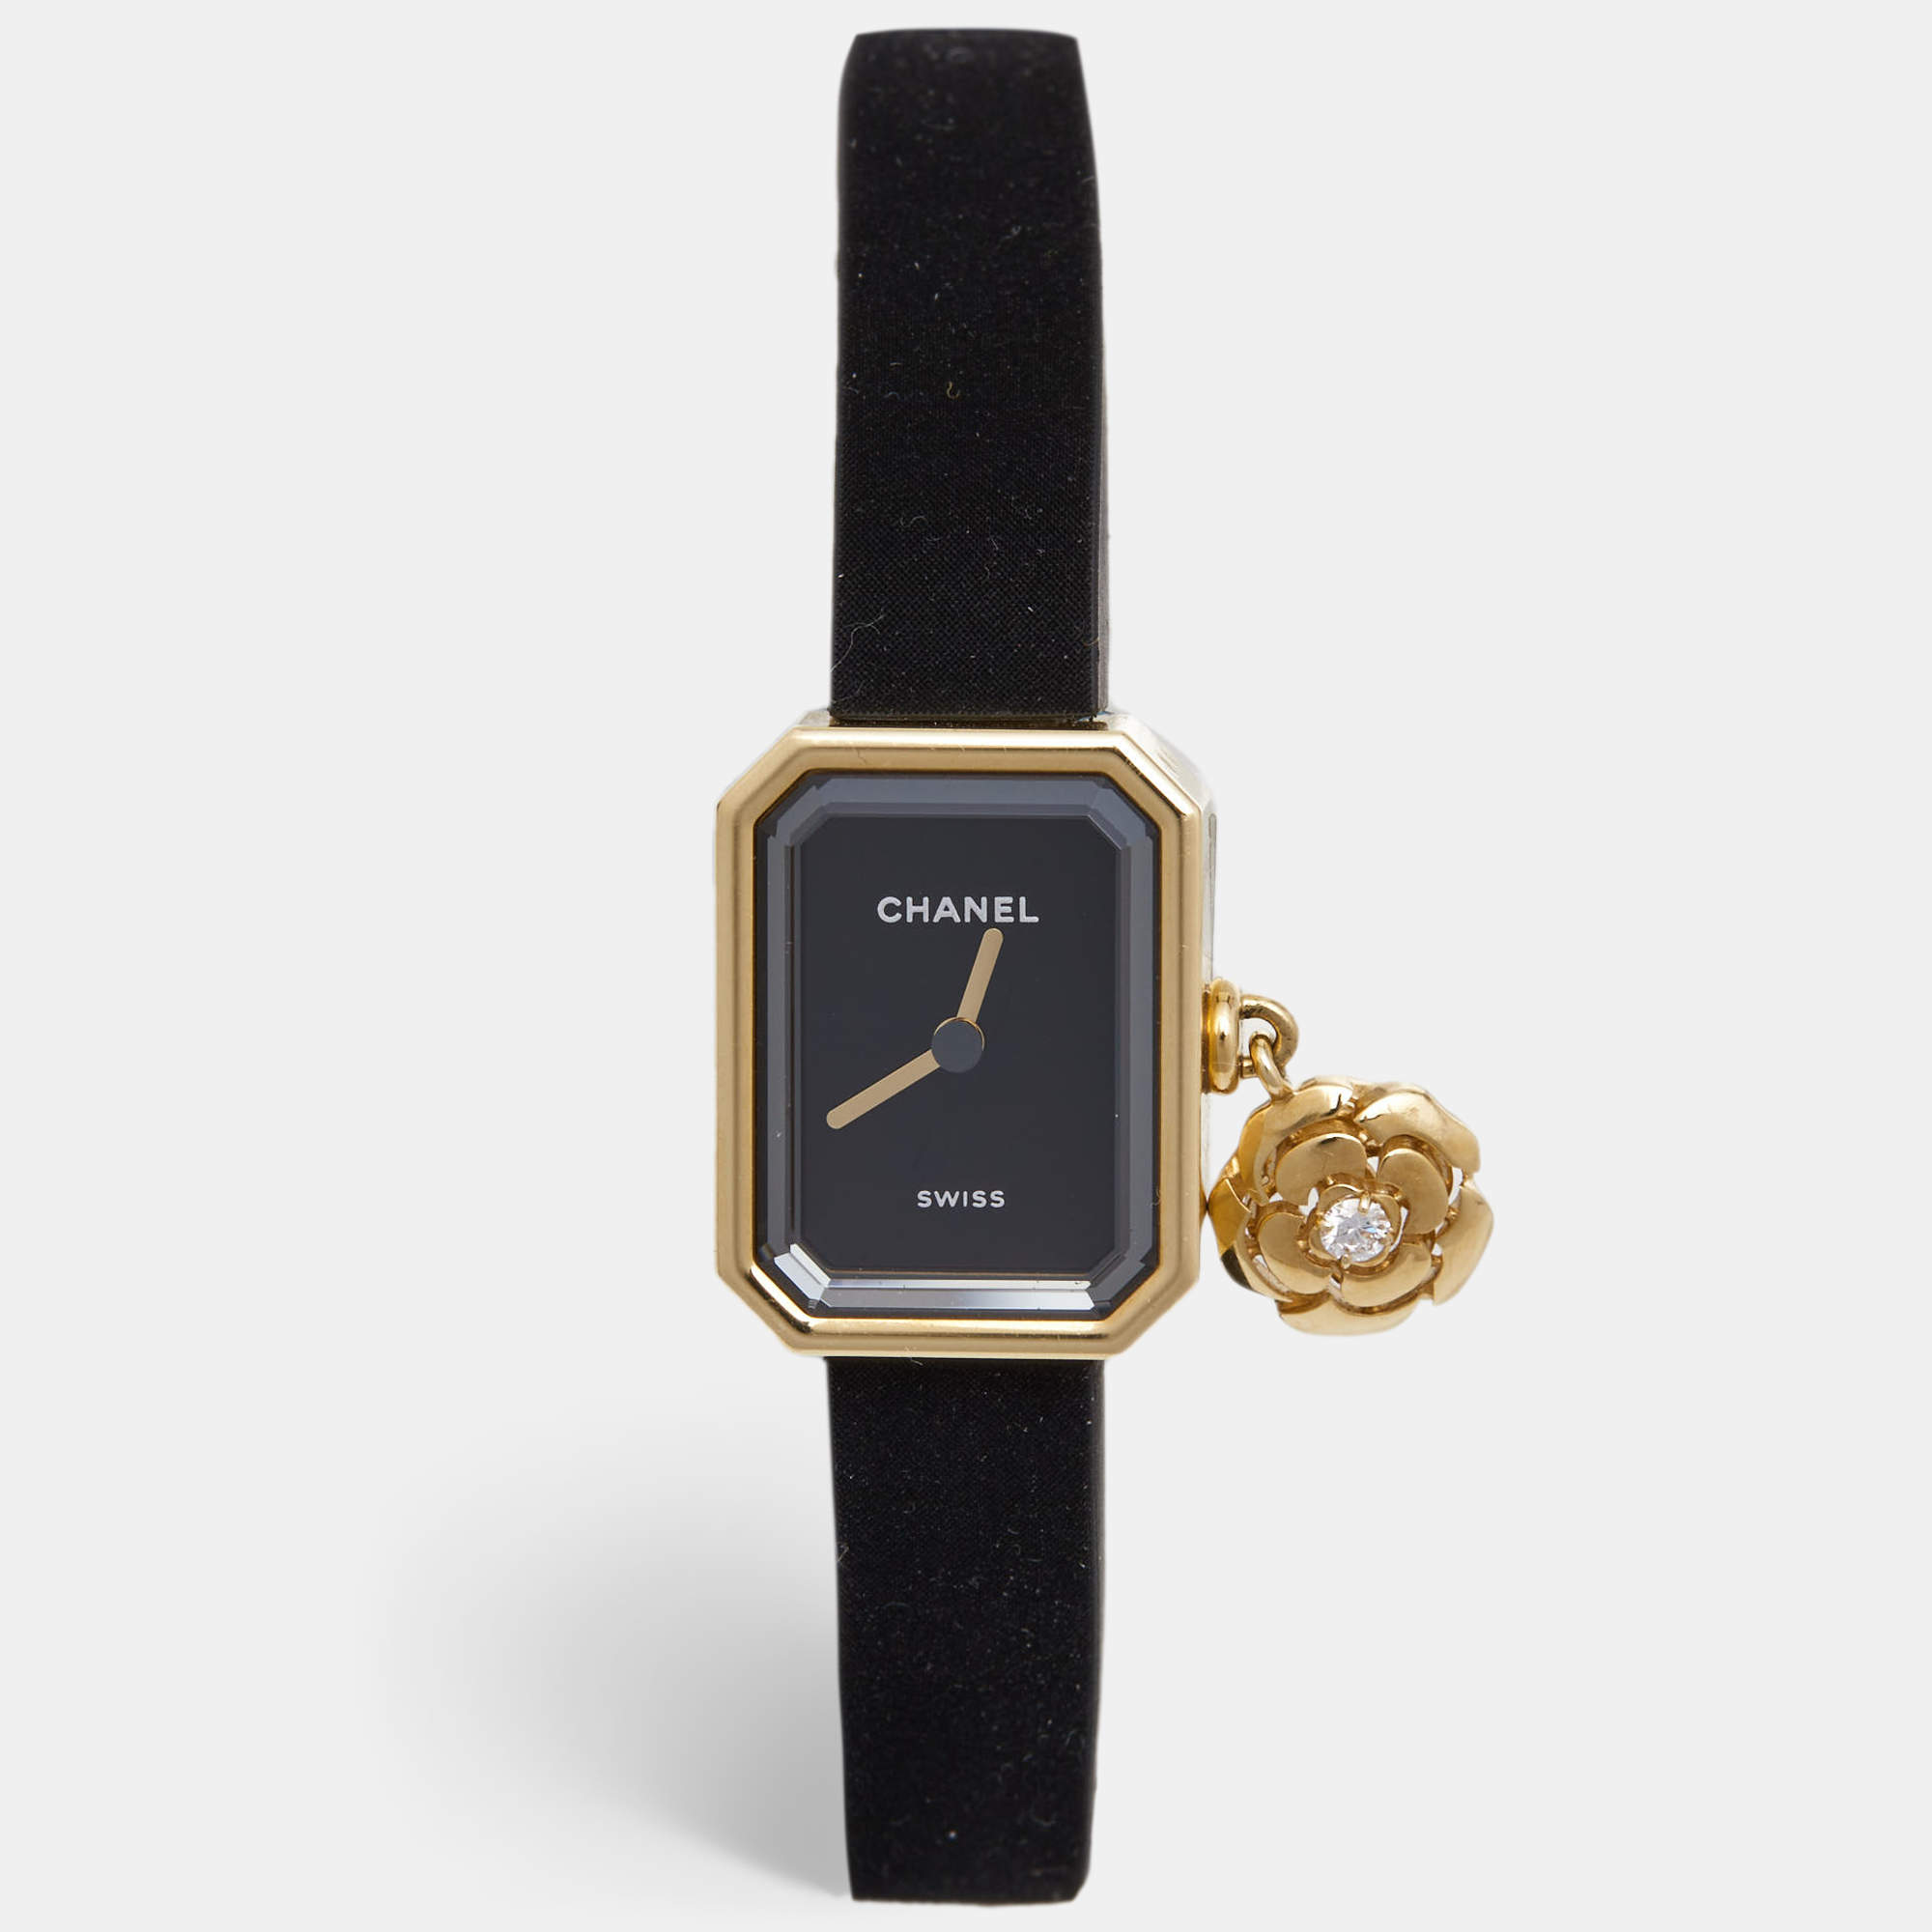 Chanel - Premier 18K Yellow Gold 1987 Black Dial Watch